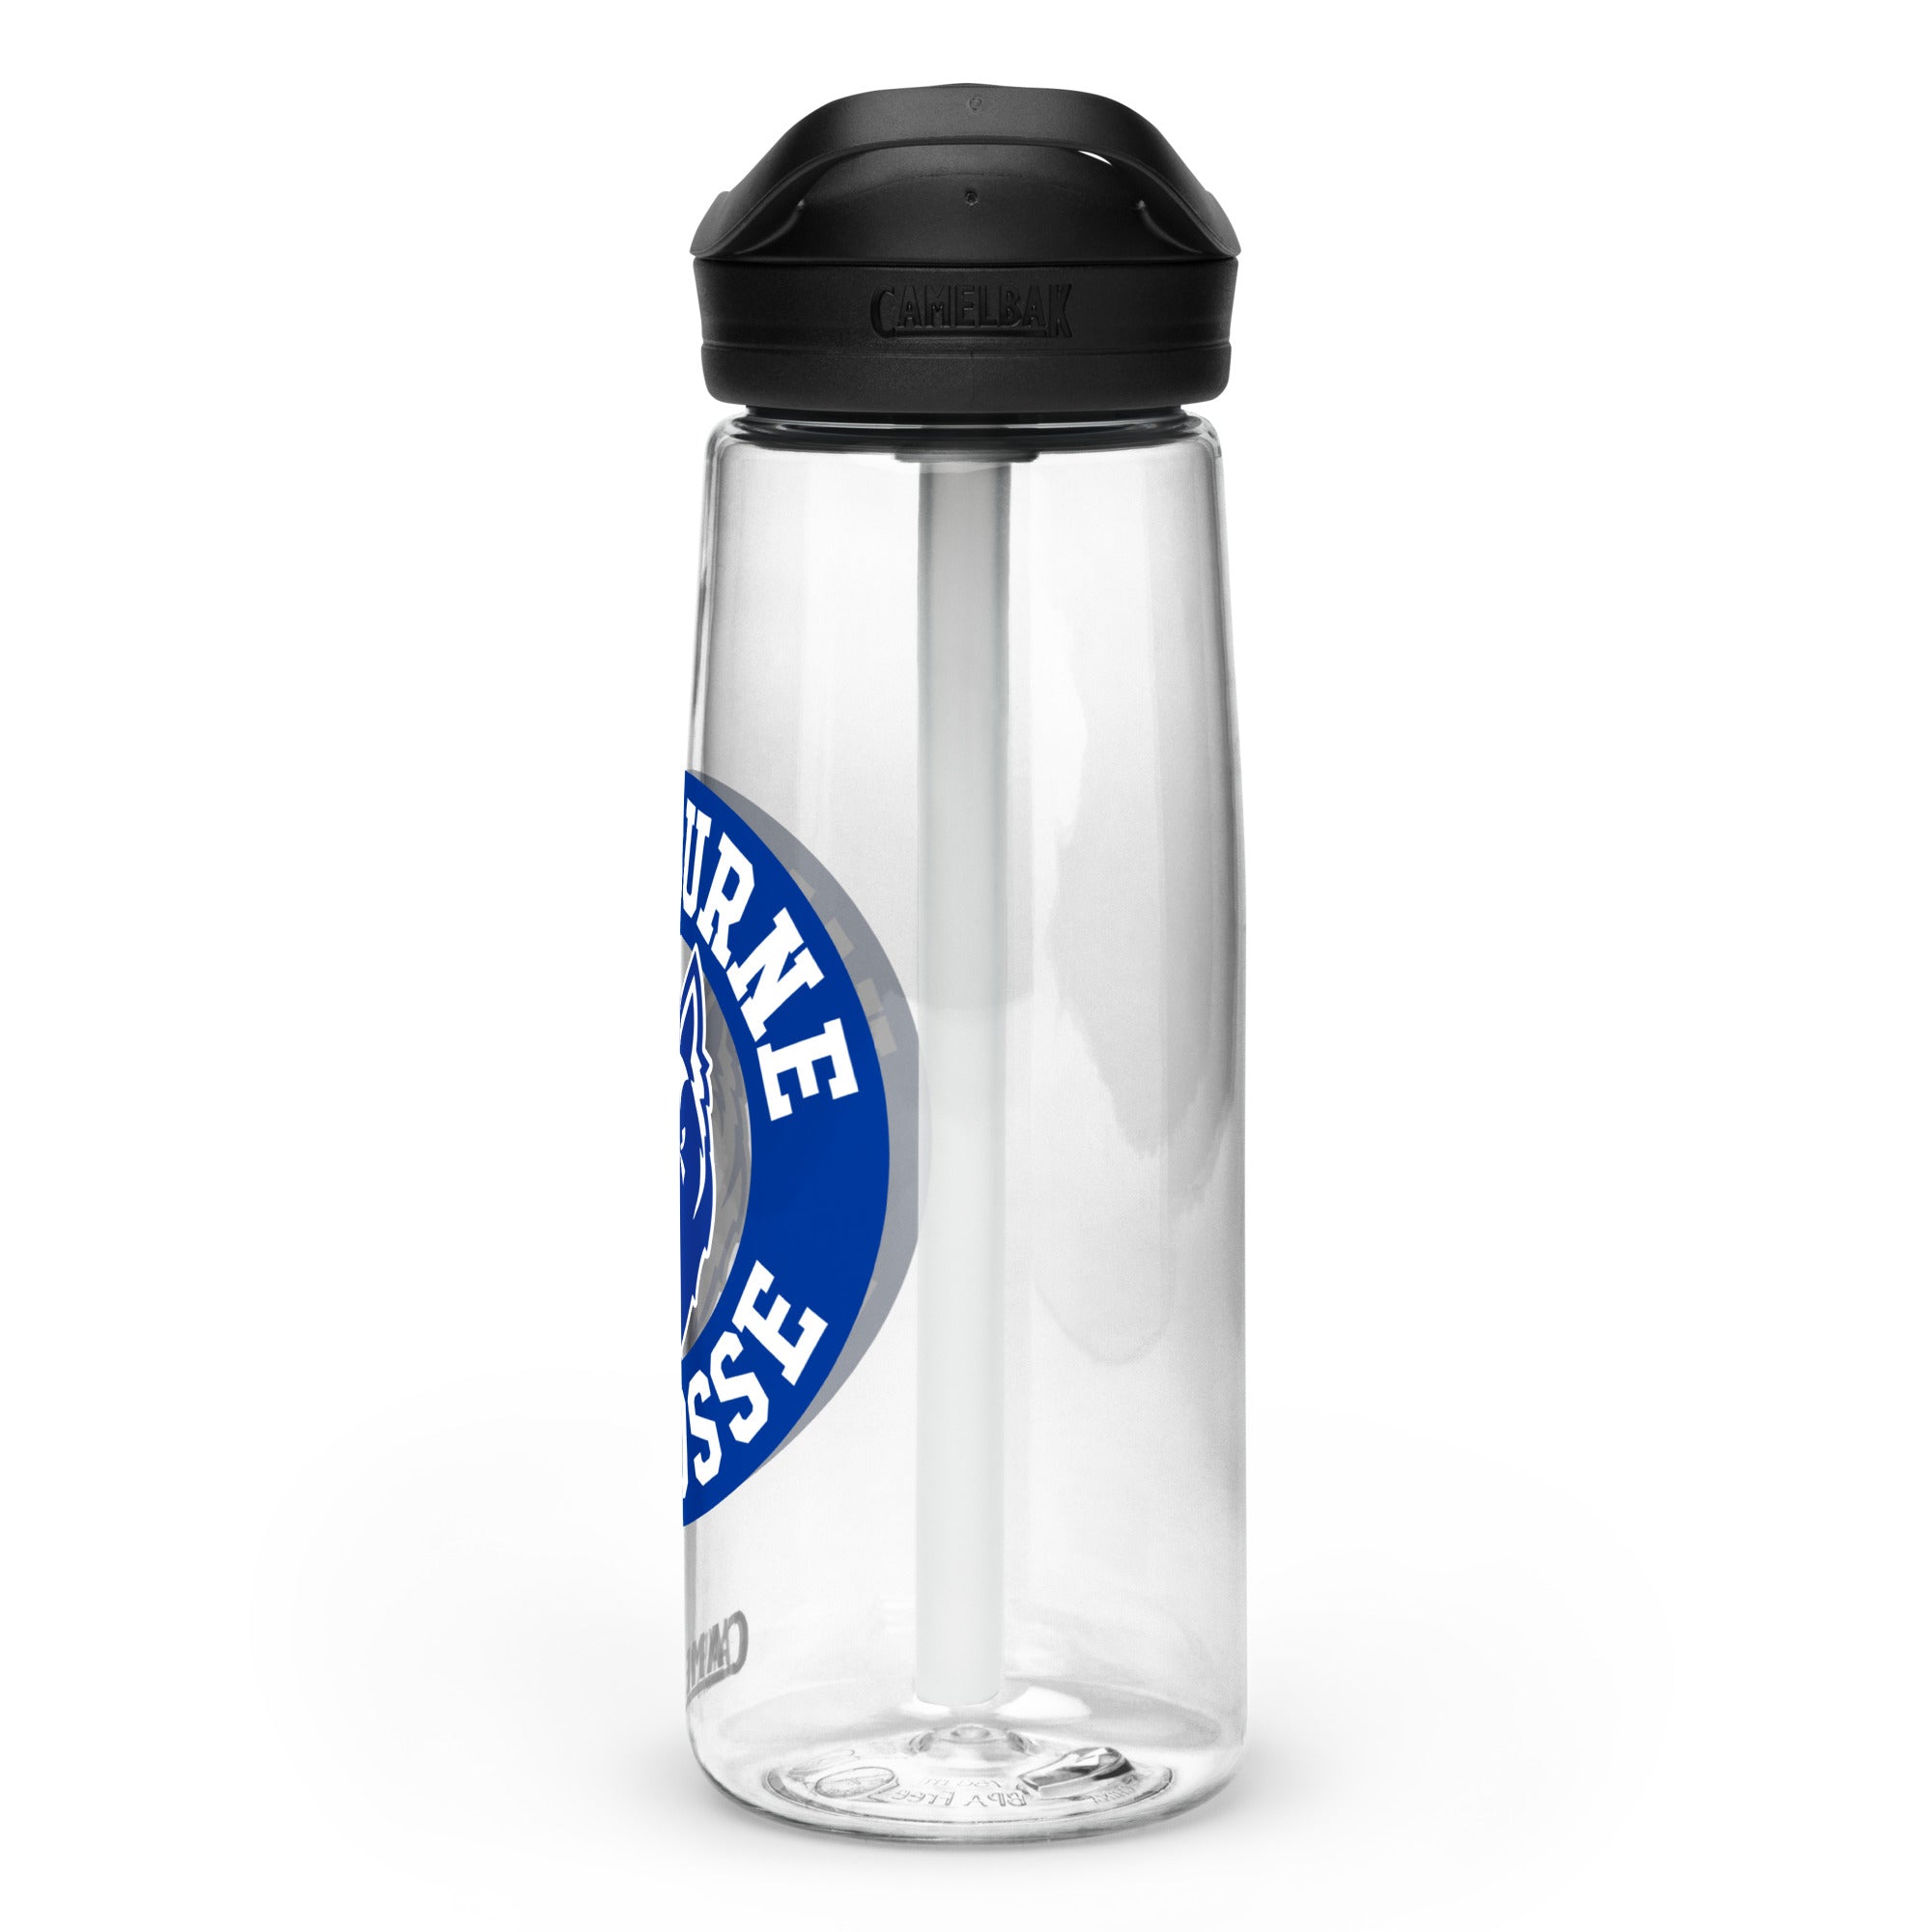 WK Sports water bottle